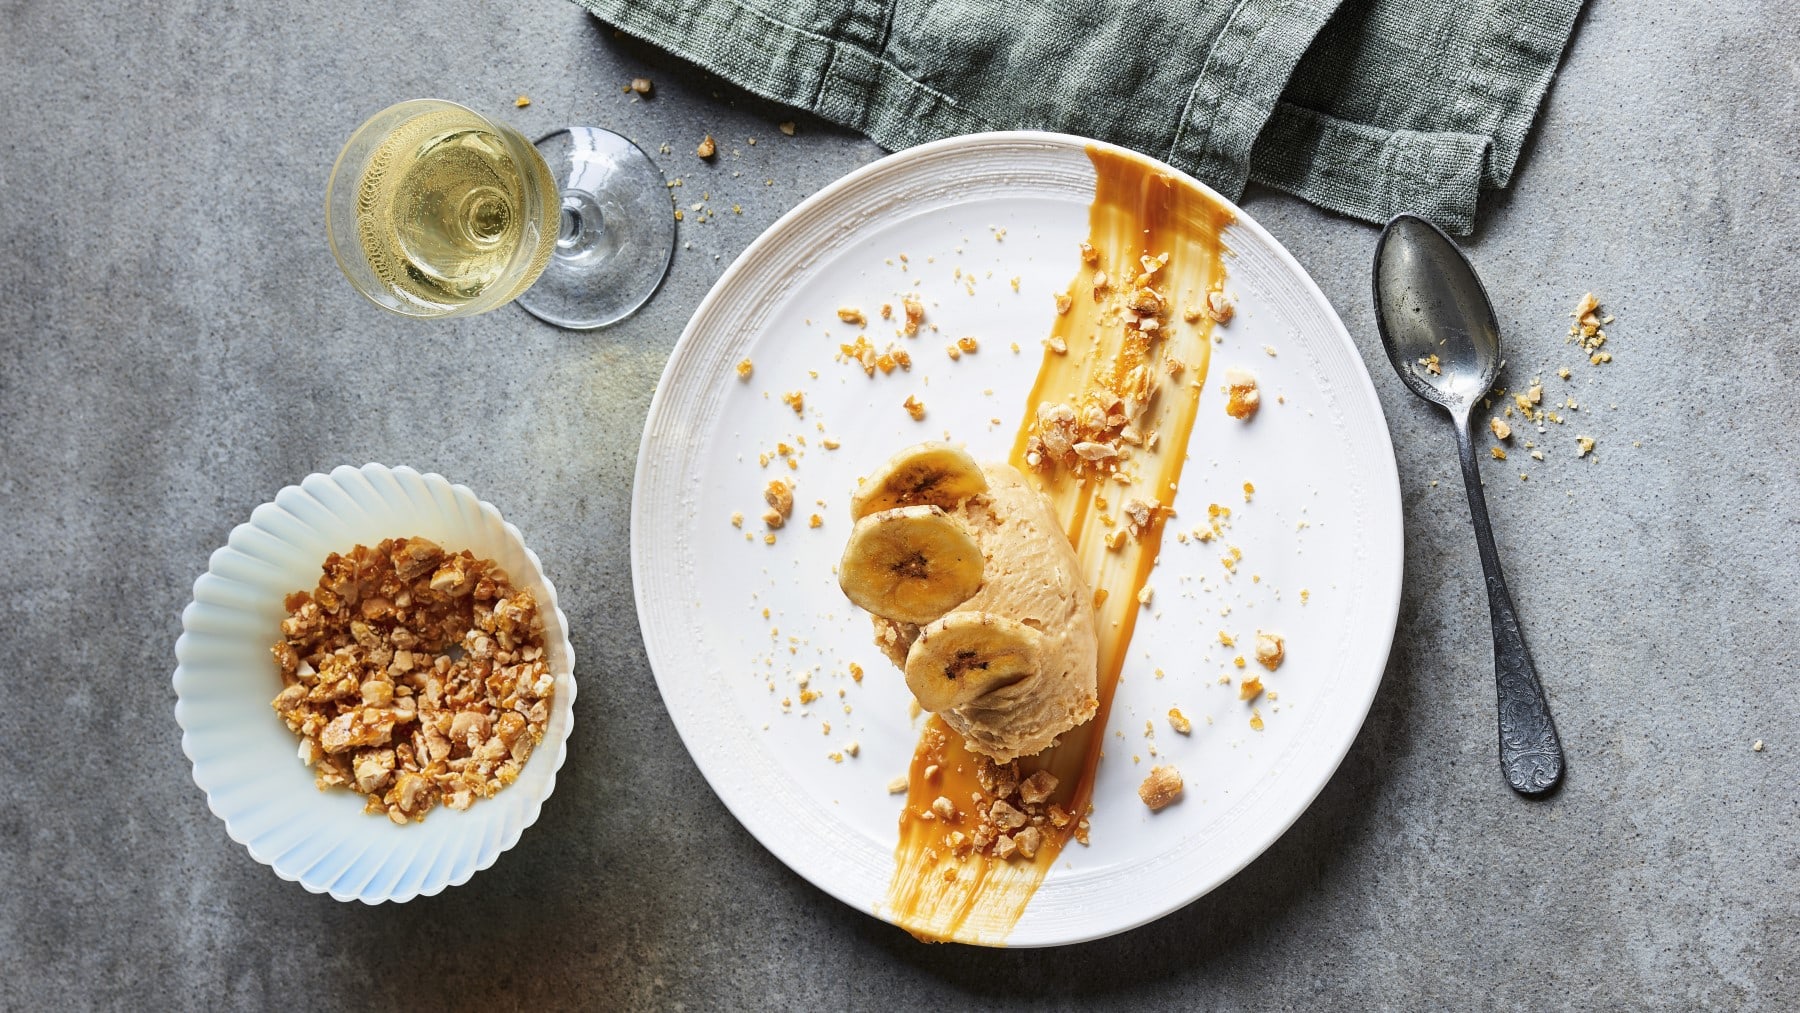 Erdnussbutterparfait mit Salted-Caramel-Crunch, serviert auf einem weißen Teller mit Bananen garniert und mit Wein auf einem Steintisch serviert.